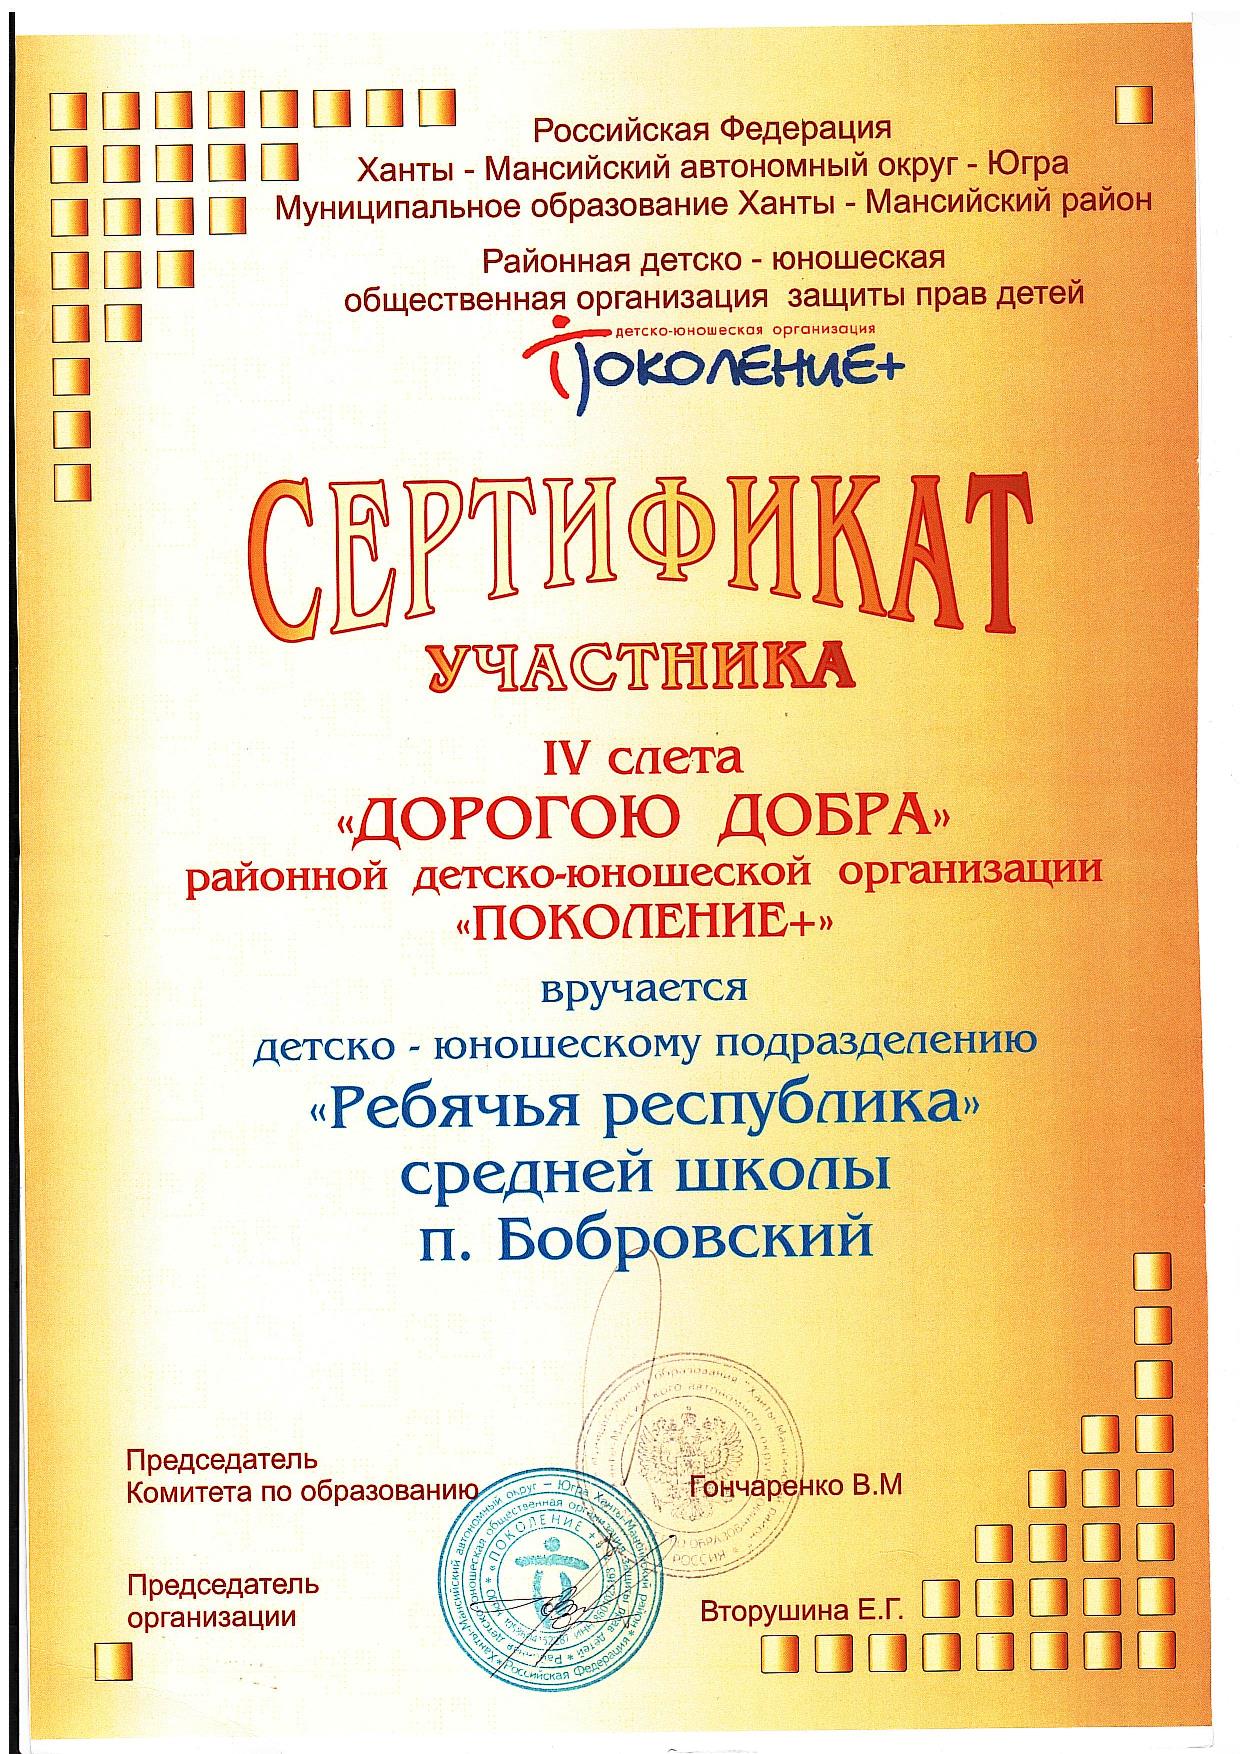 Сертификат участника. IV Районный слет Поколение+. 2012